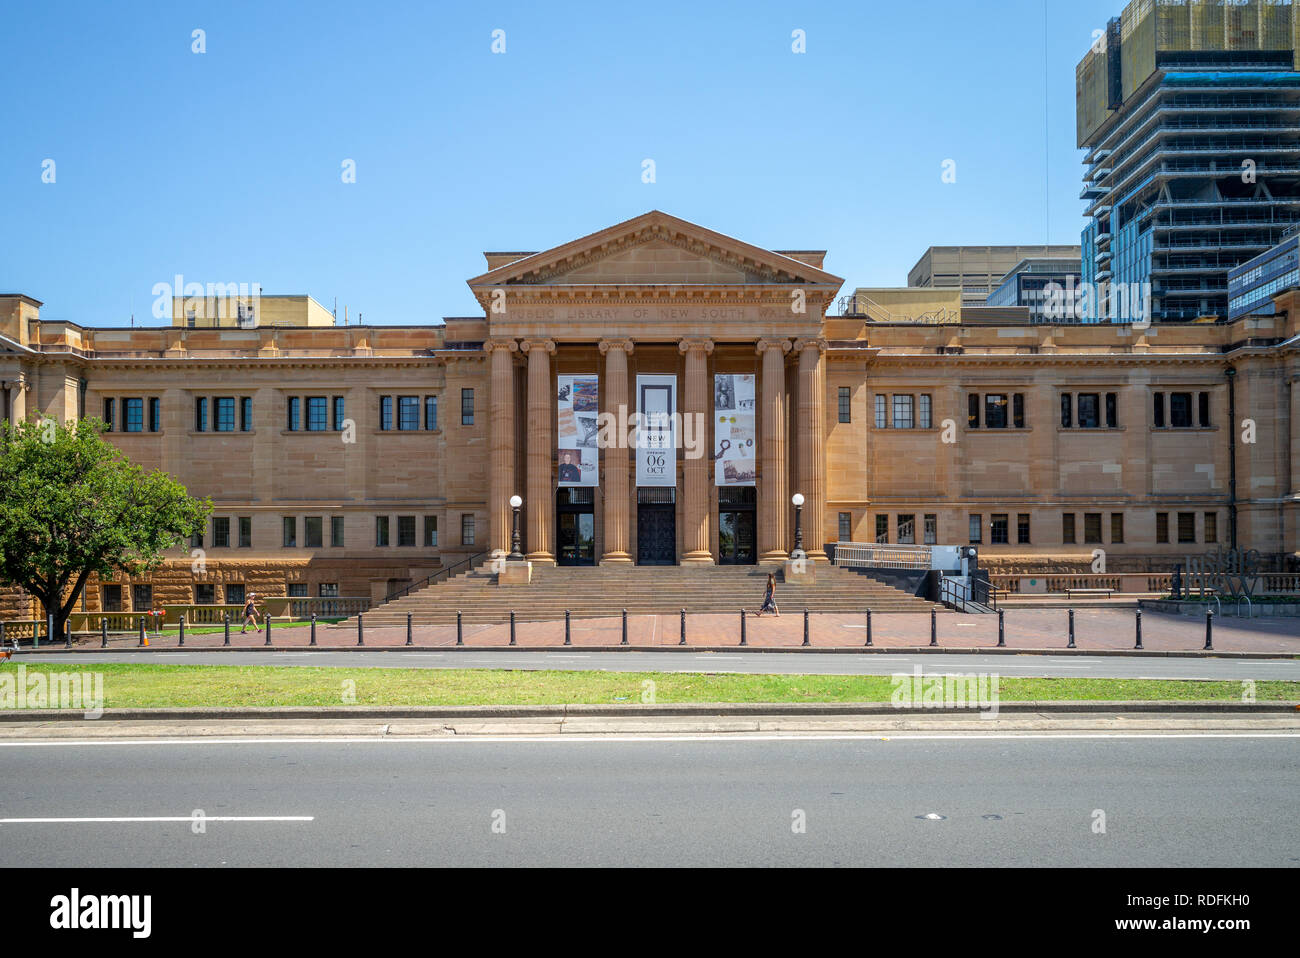 Sydney, Australien - 8. Januar 2019: Fassade der öffentlichen Bibliothek von New South Wales, einem großen denkmalgeschützten Spezialsammlungen, Referenz- und Forschung Stockfoto